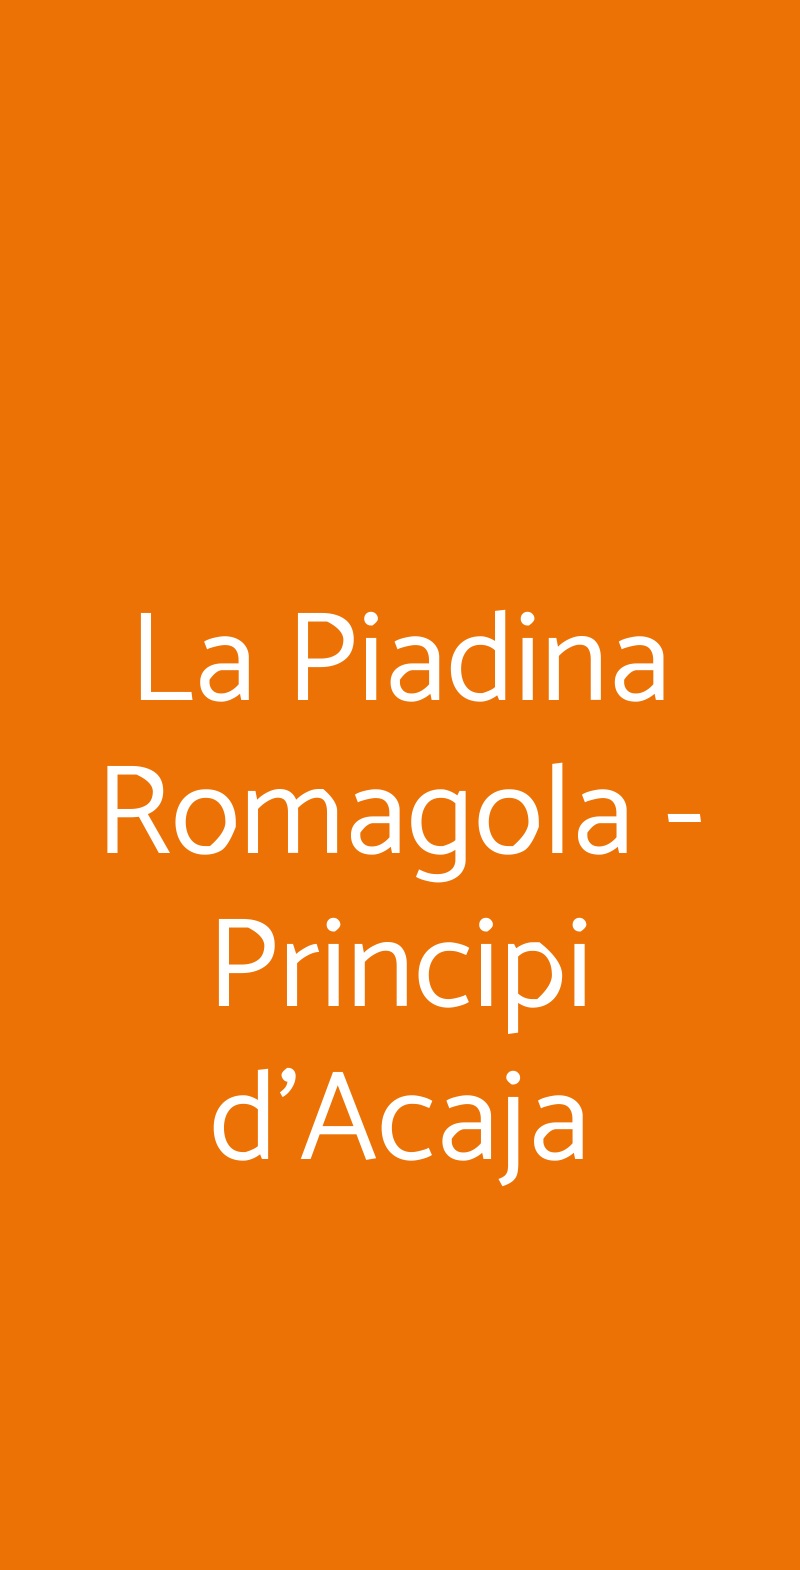 La Piadina Romagola - Principi d'Acaja Torino menù 1 pagina